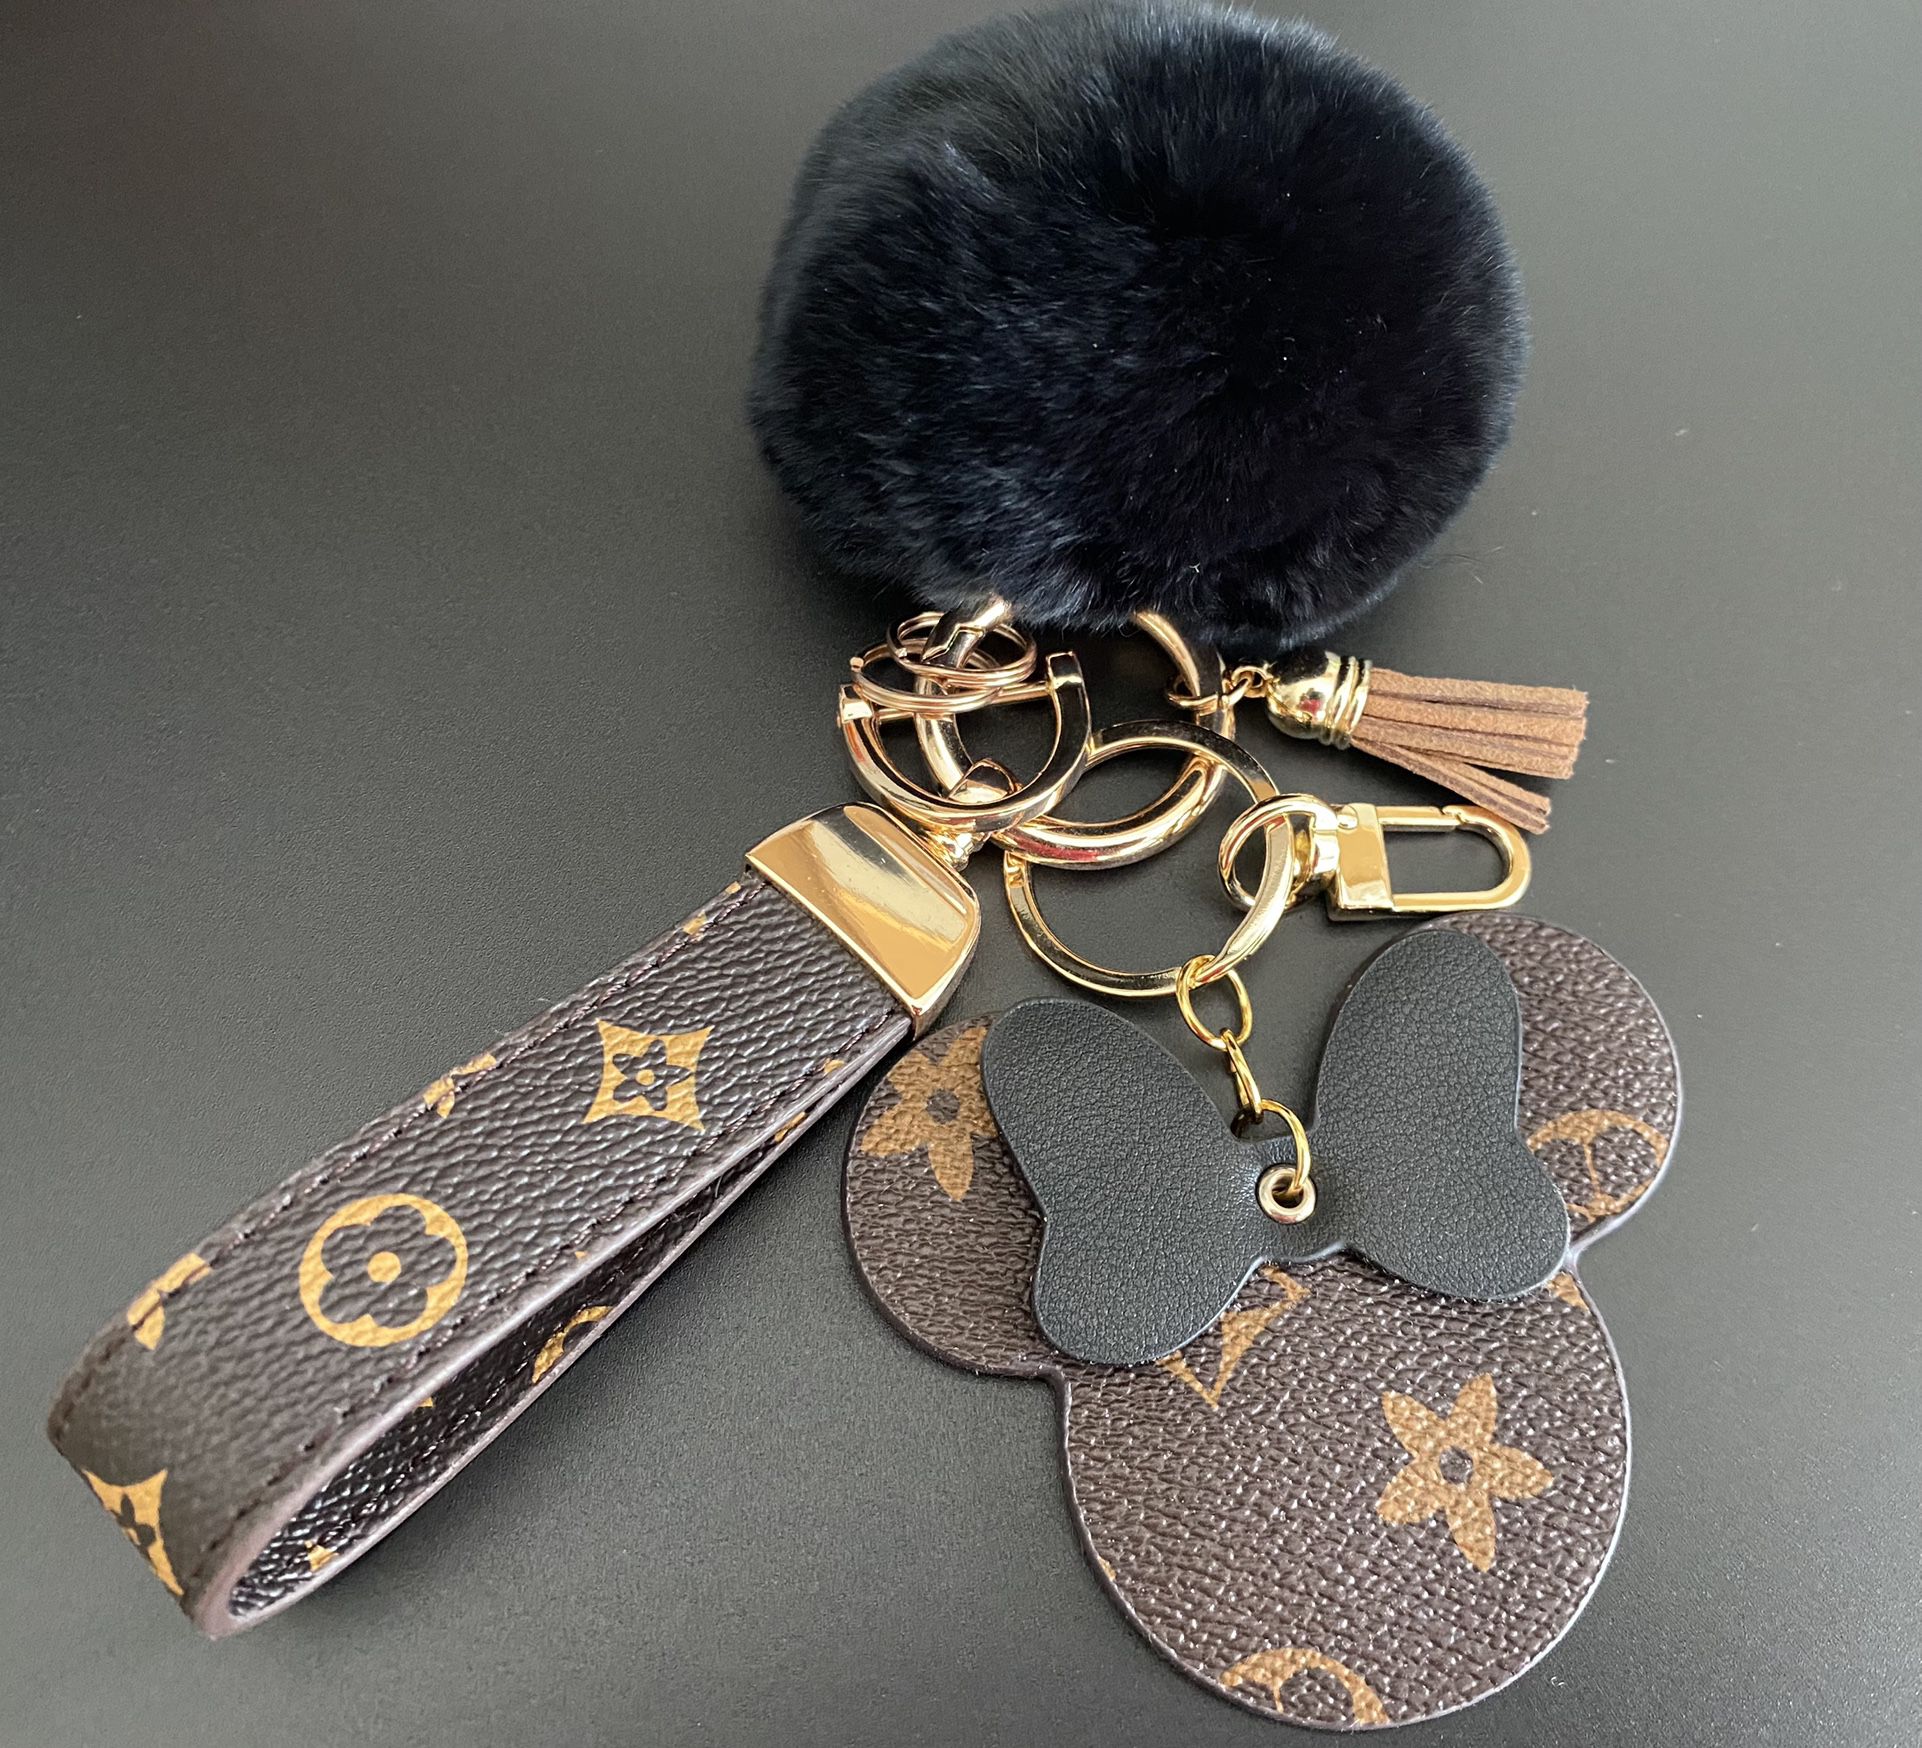 luxury keychain Pom Pom keychain leather straps Mikey Mouse figure 